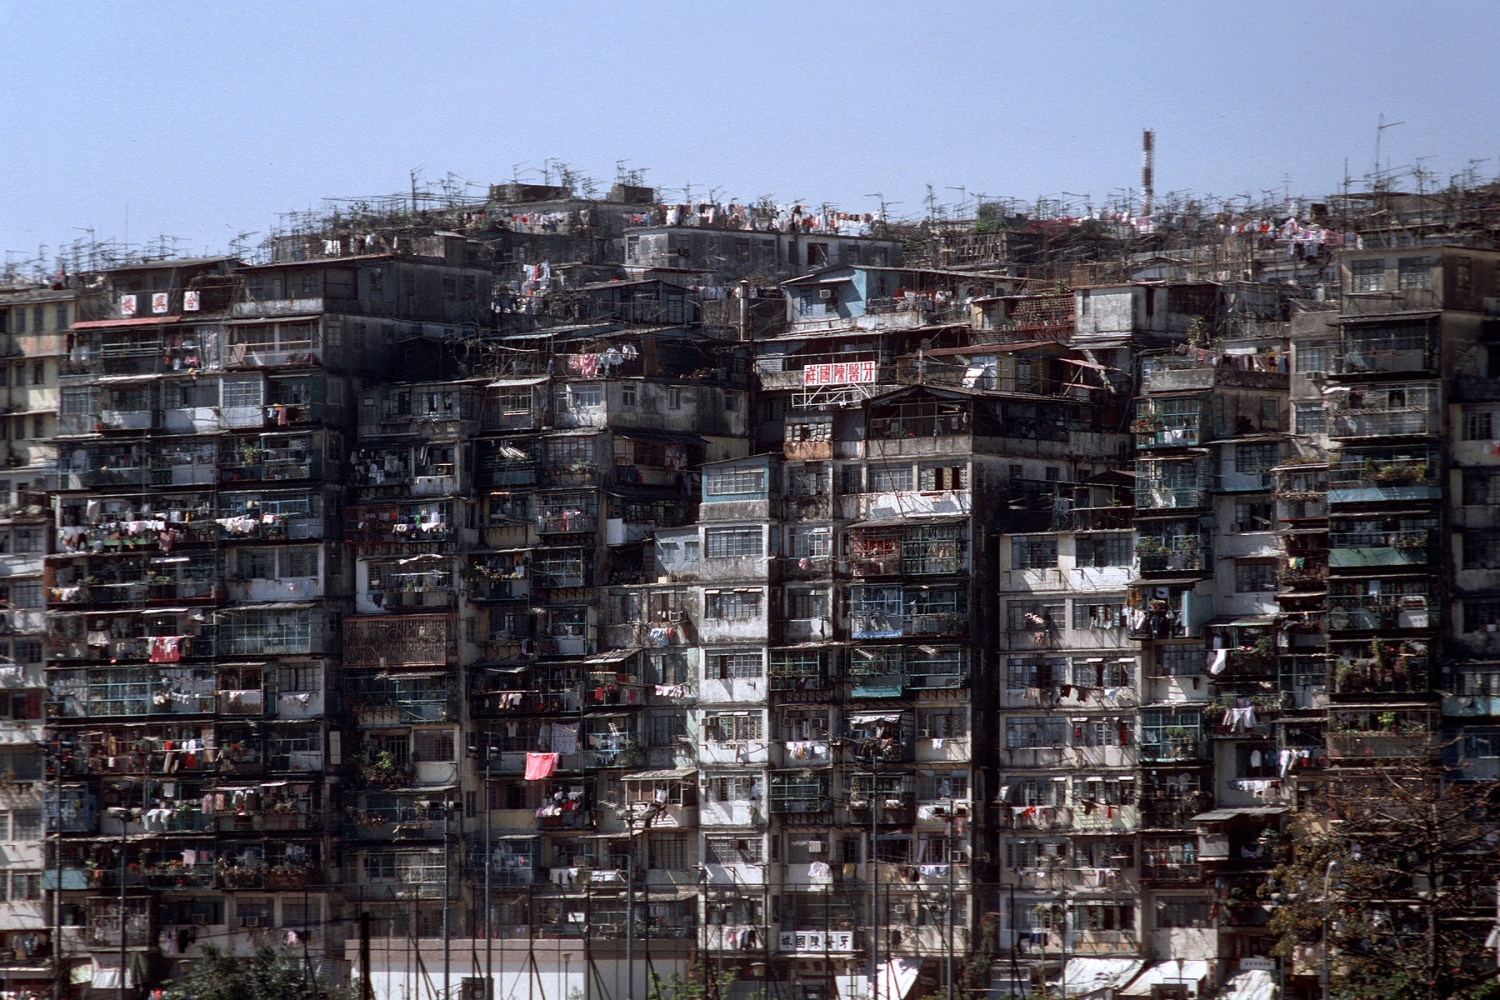 bill-hocker-walled-city-kowloon-hong-kong-1988